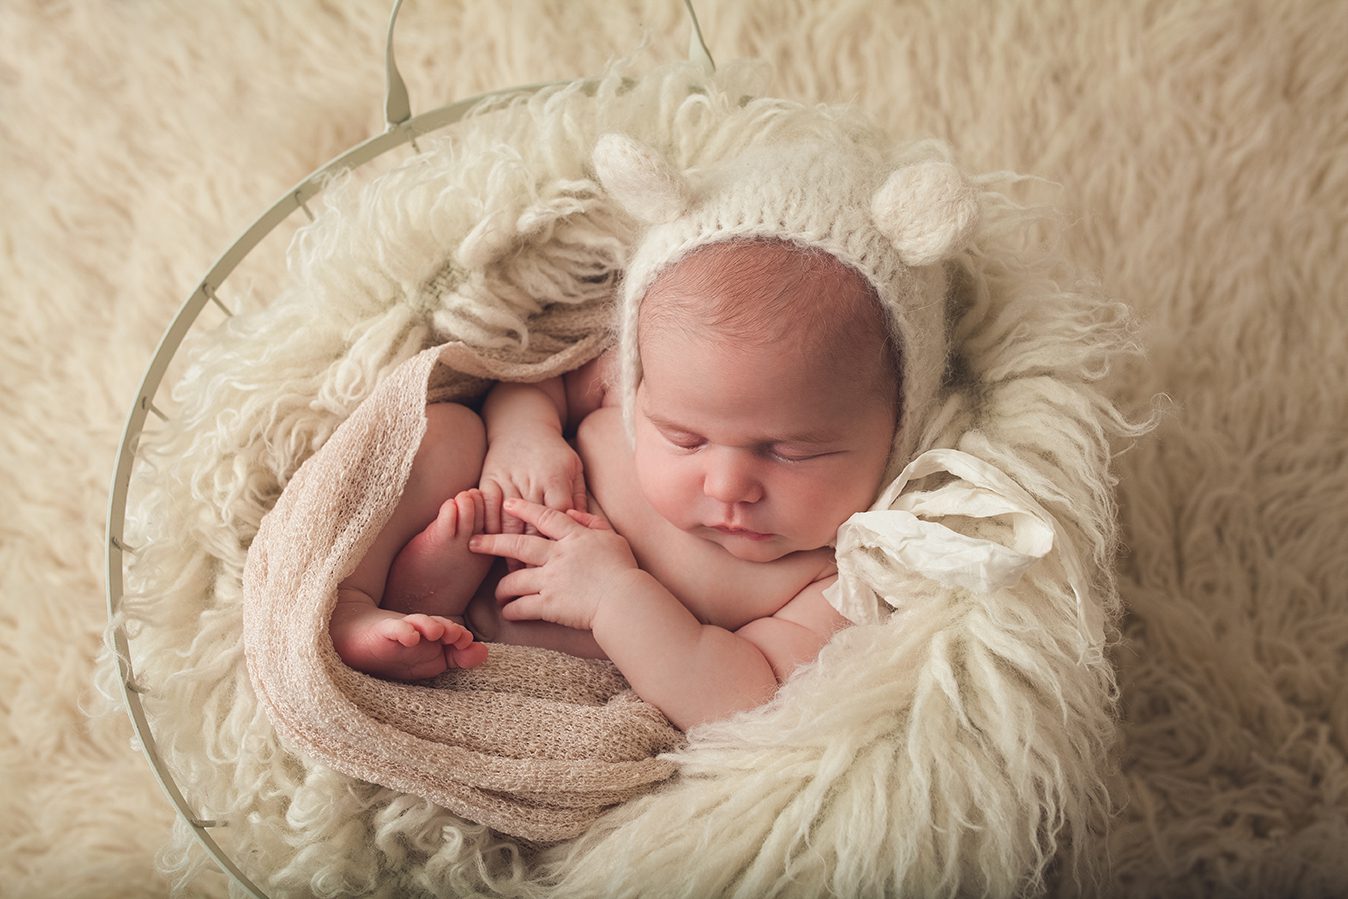 edmonton newborn photographer - teddy bear posed